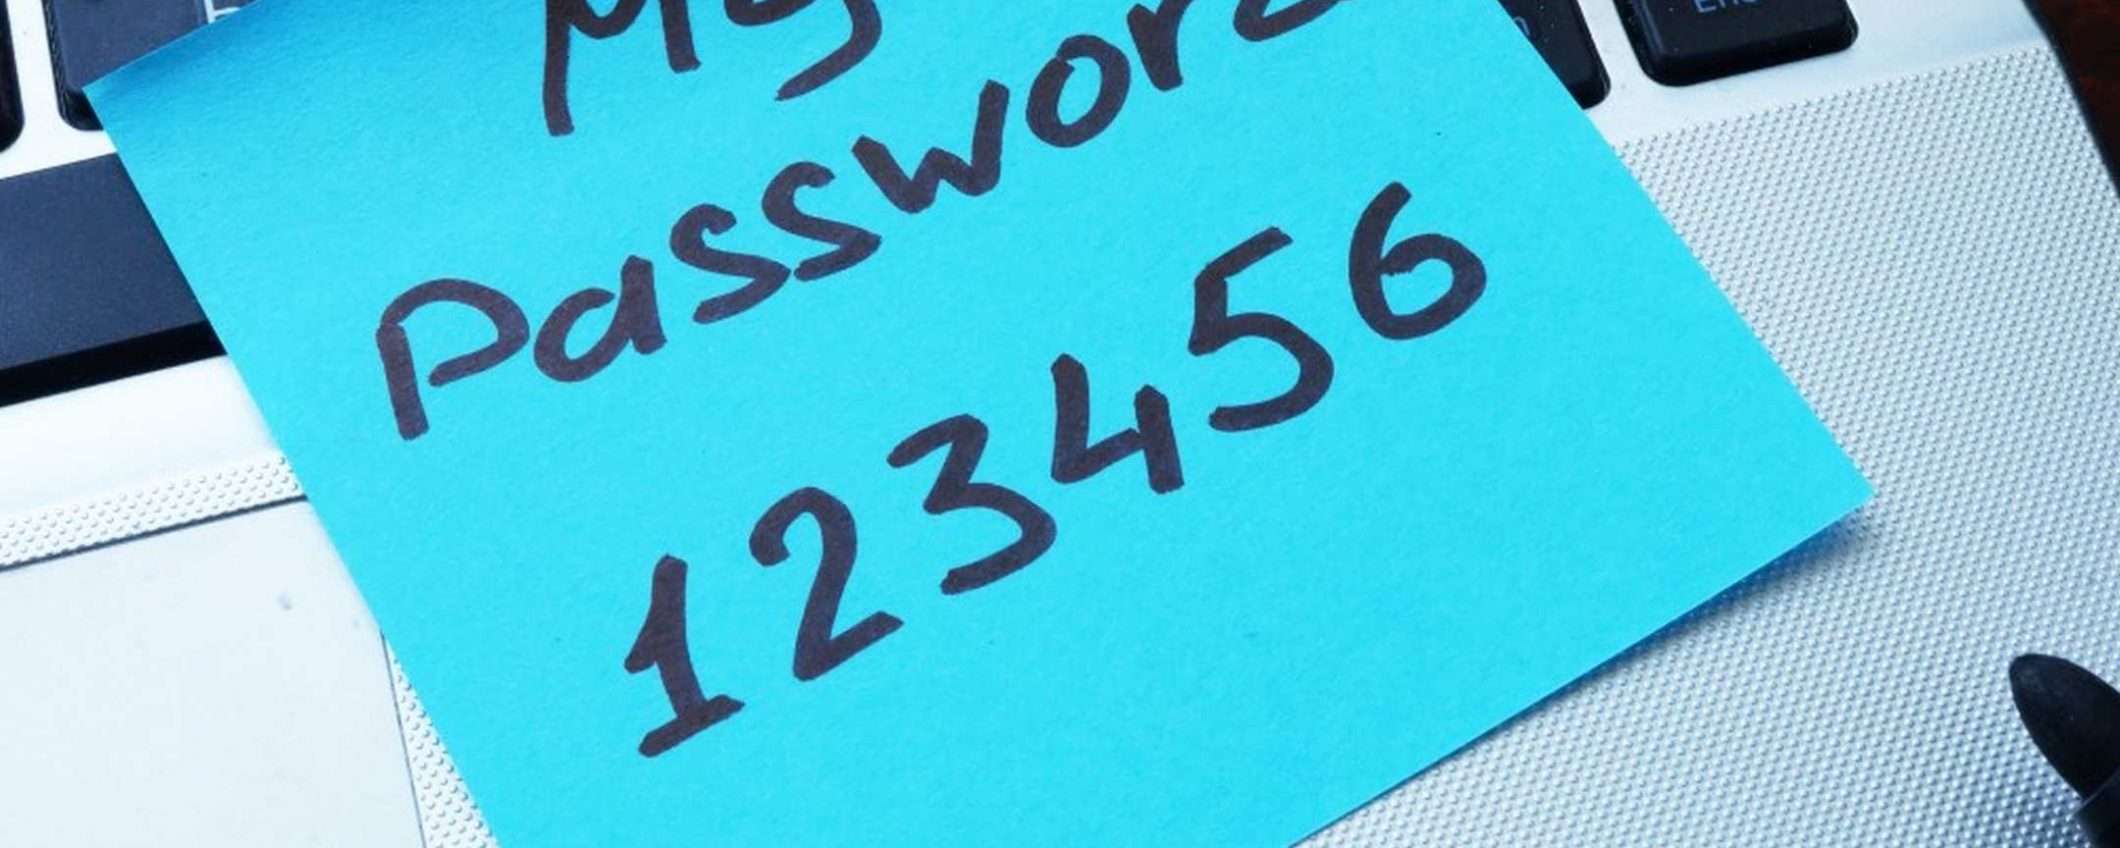 La tua password sicura? 4 trucchi per renderla a prova di hacker